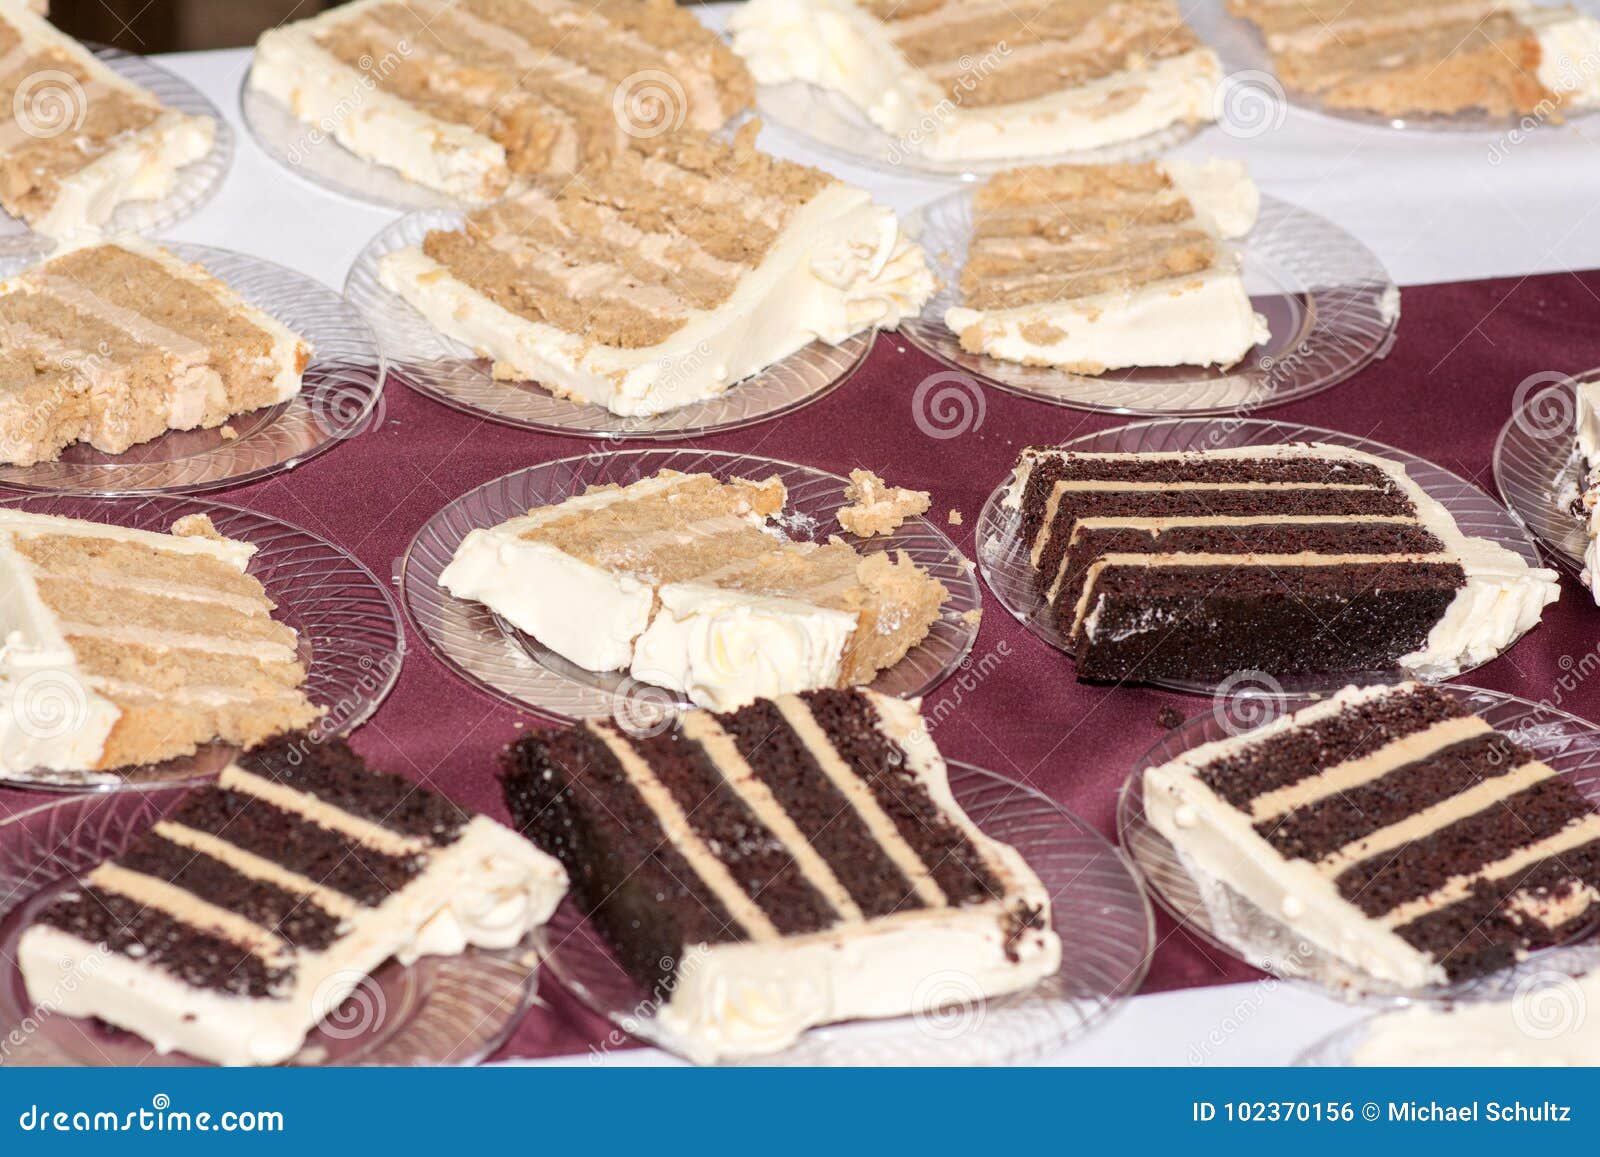 Wedding Cake Stock Photo Image Of Cake Indulgence 102370156